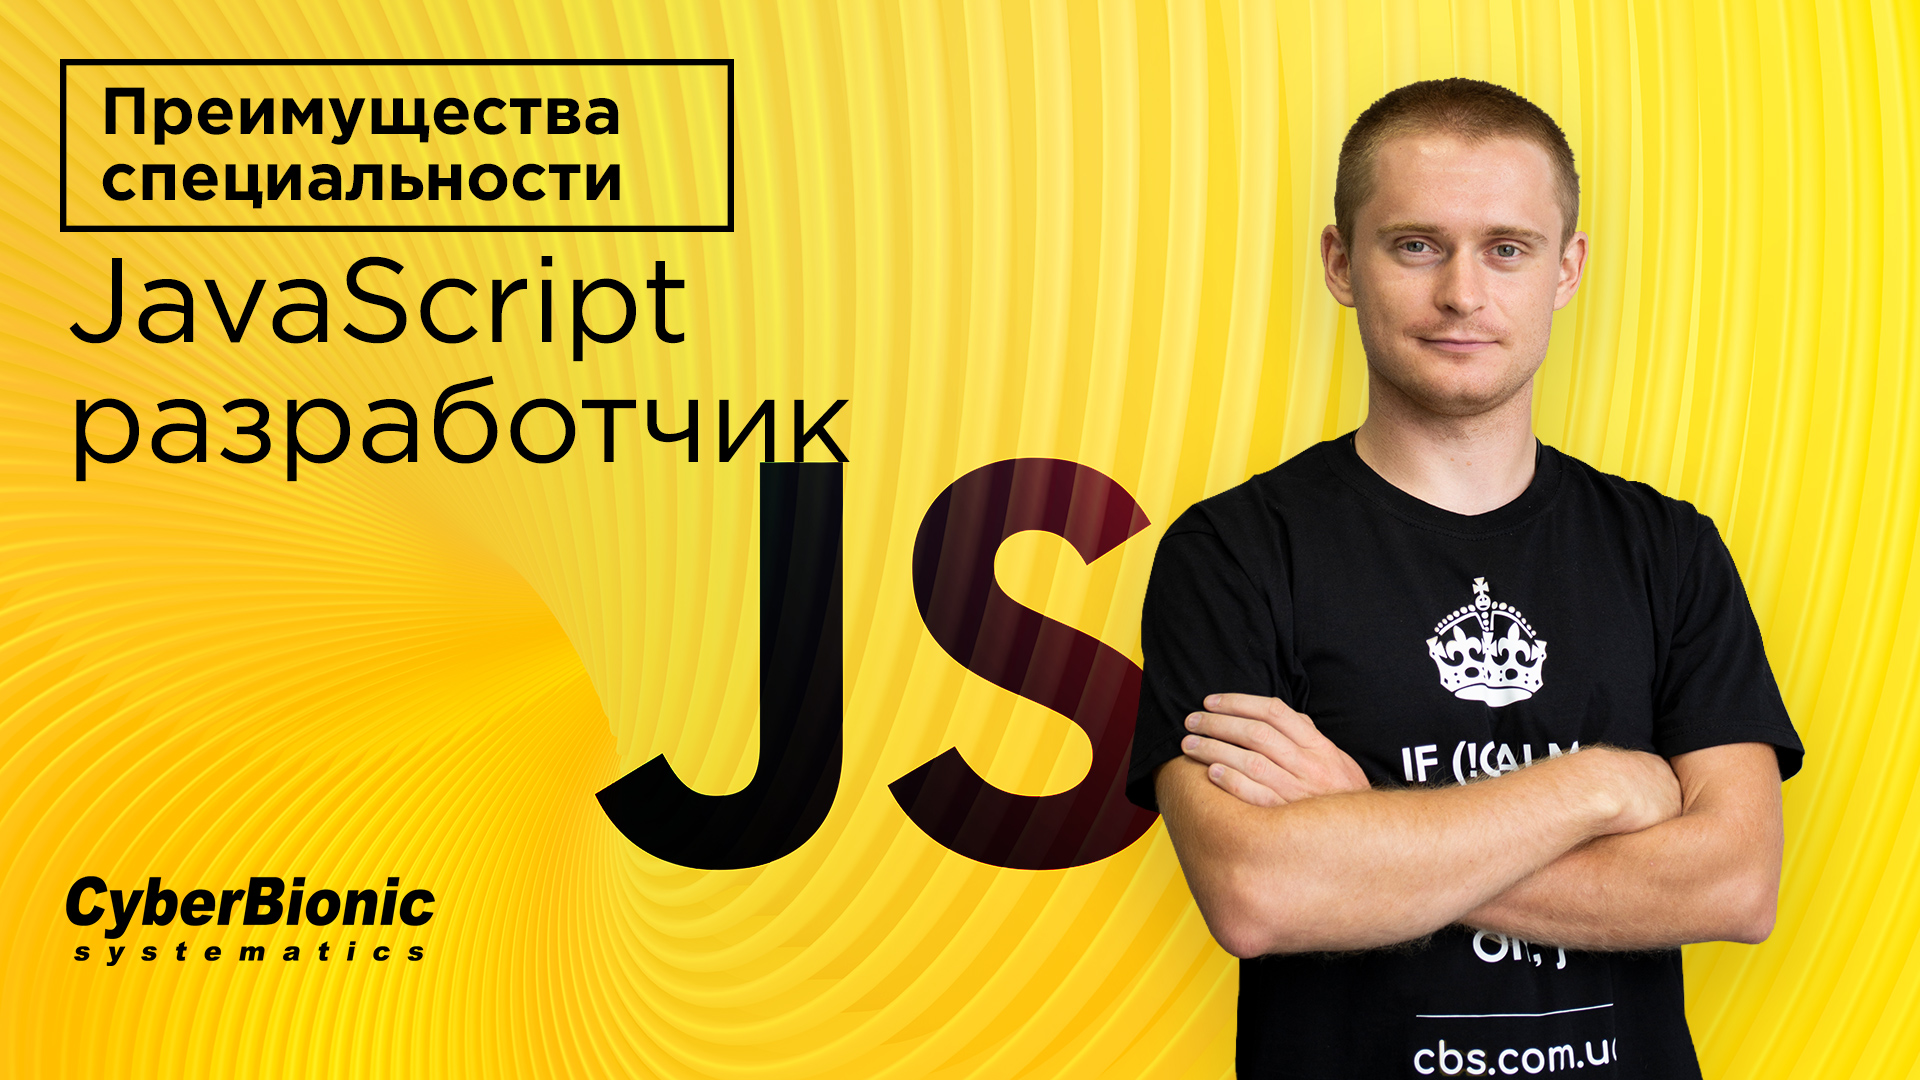 Обложка вебинара Преимущества специальности JavaScript разработчик